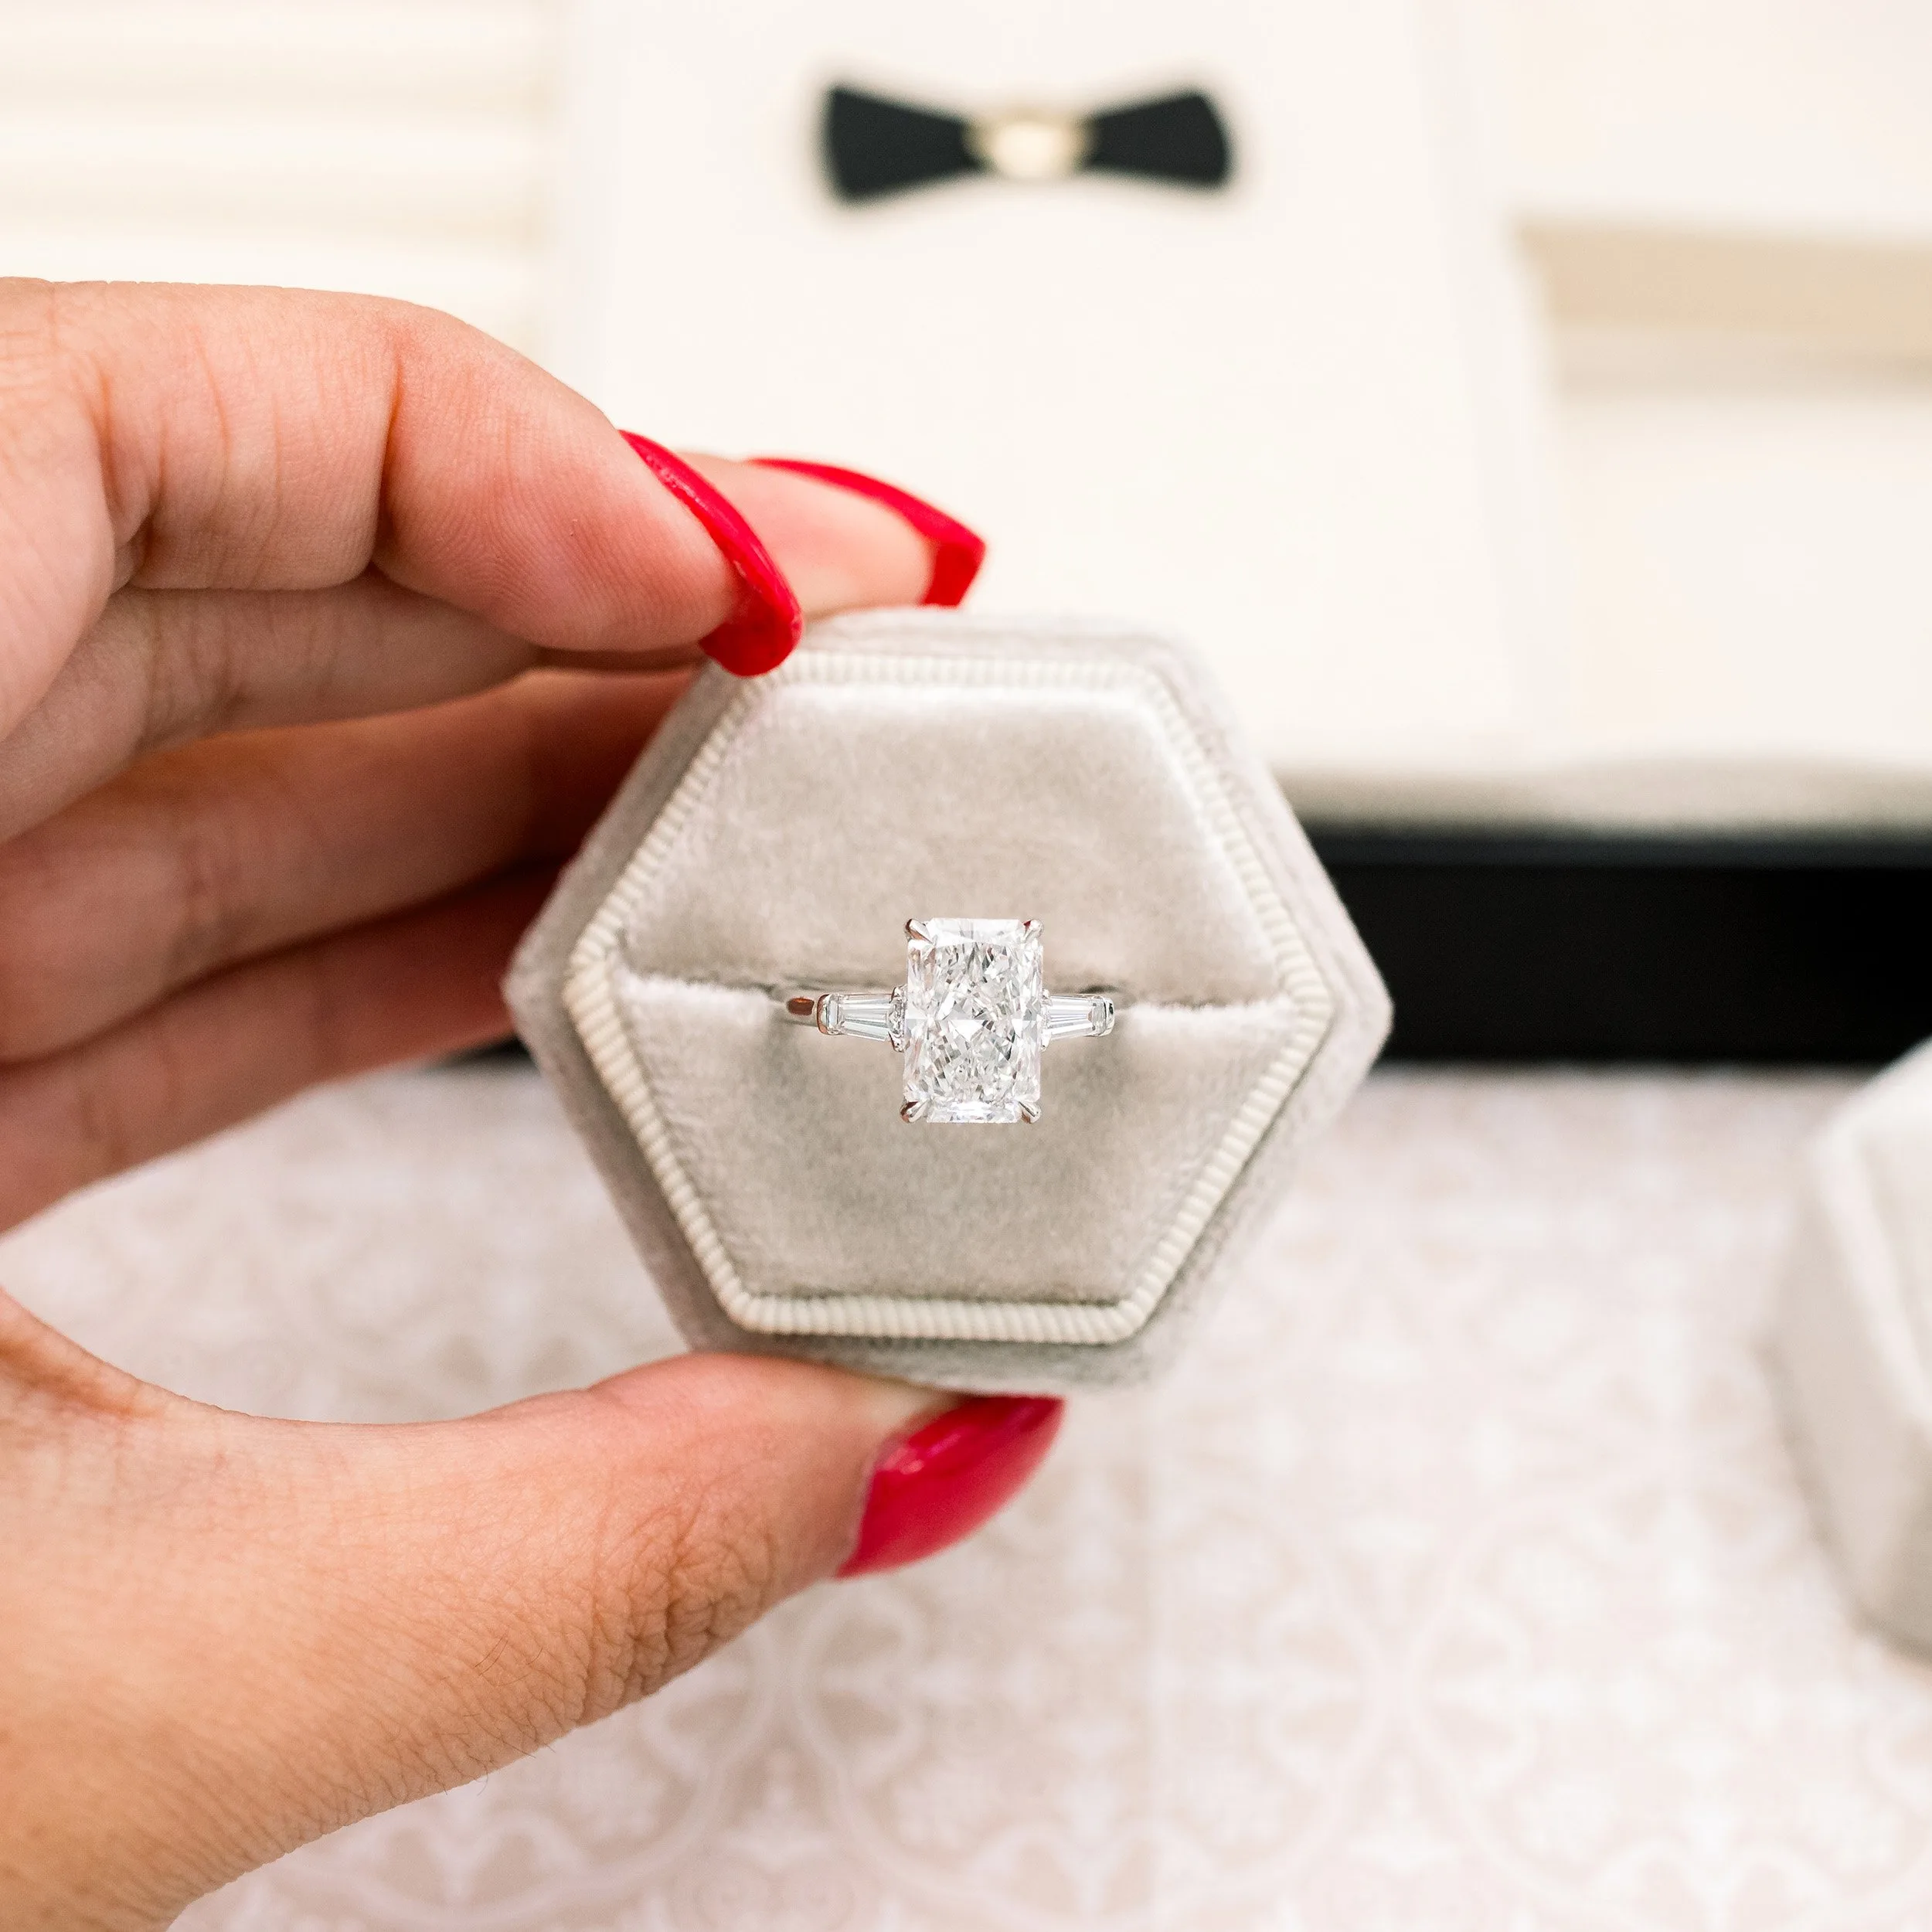 platinum 3.25 carat radiant cut lab diamond engagement ring with baguette side stones ada diamonds design ad 485 macro